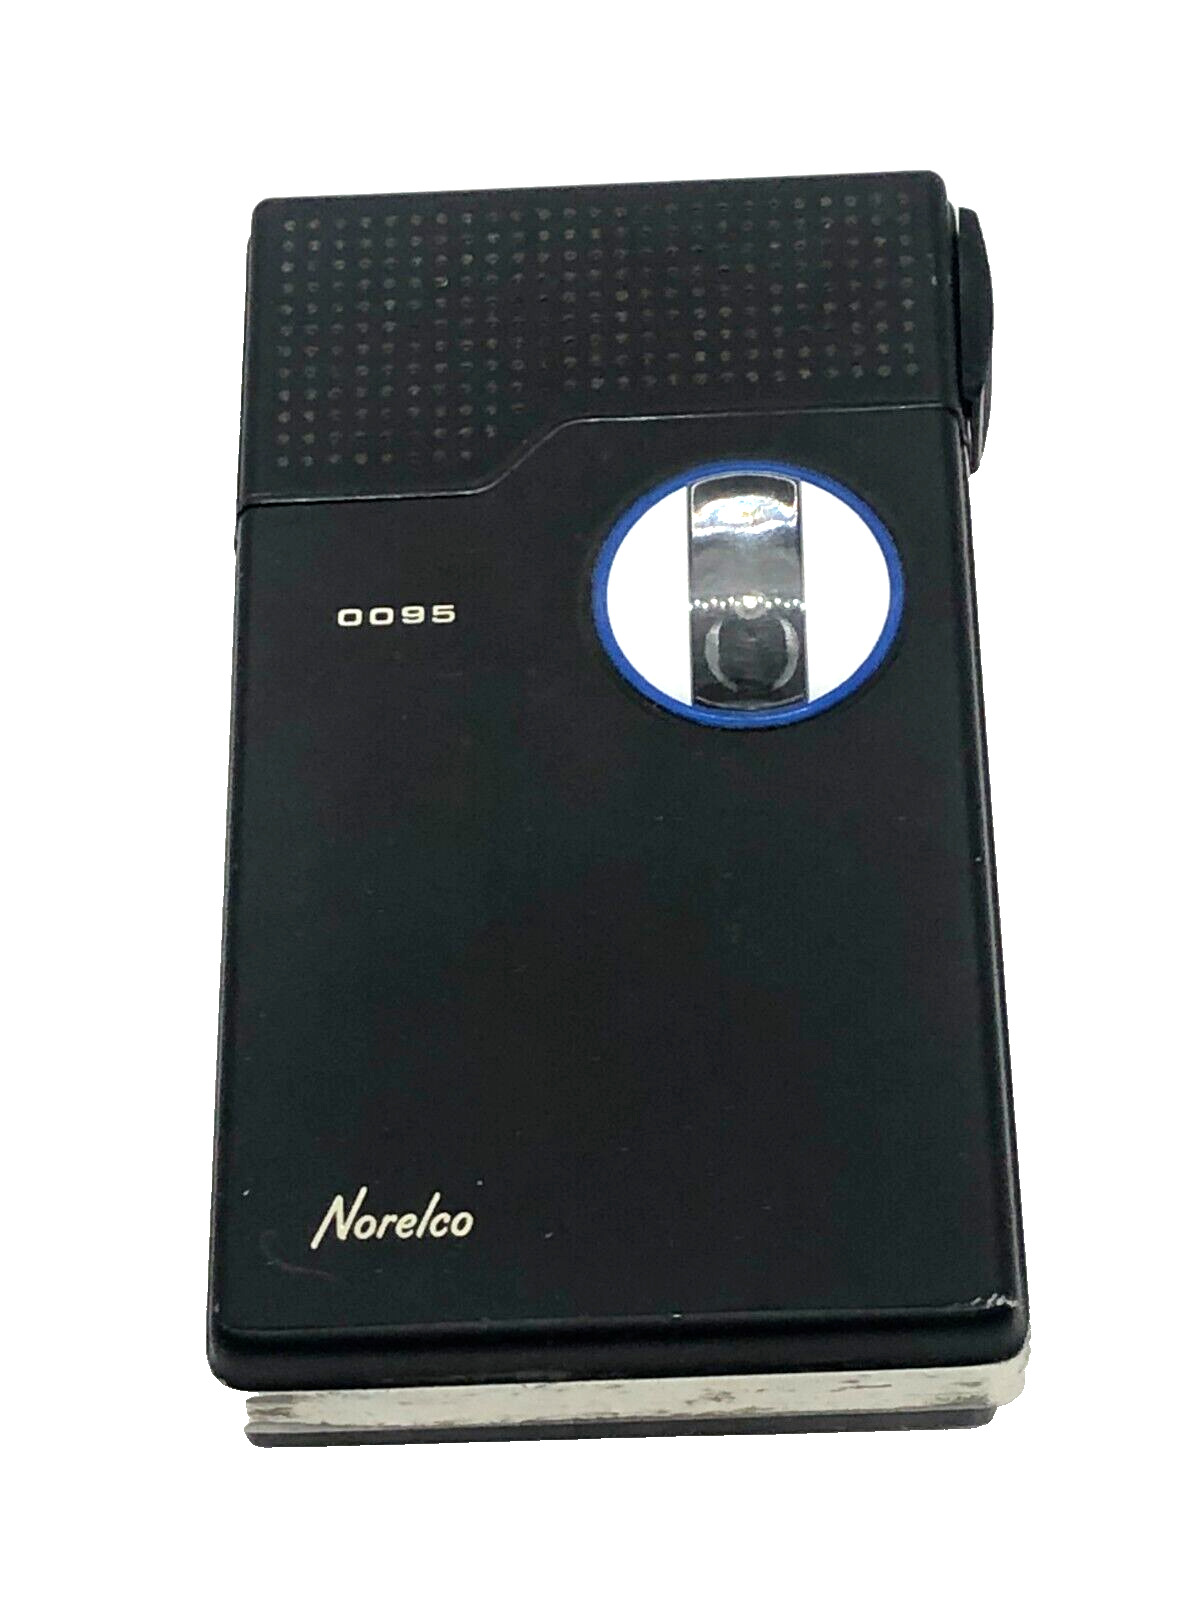 Vintage Norelco Pocket Memo 0095 Micro Voice Recorder for Parts or Repair